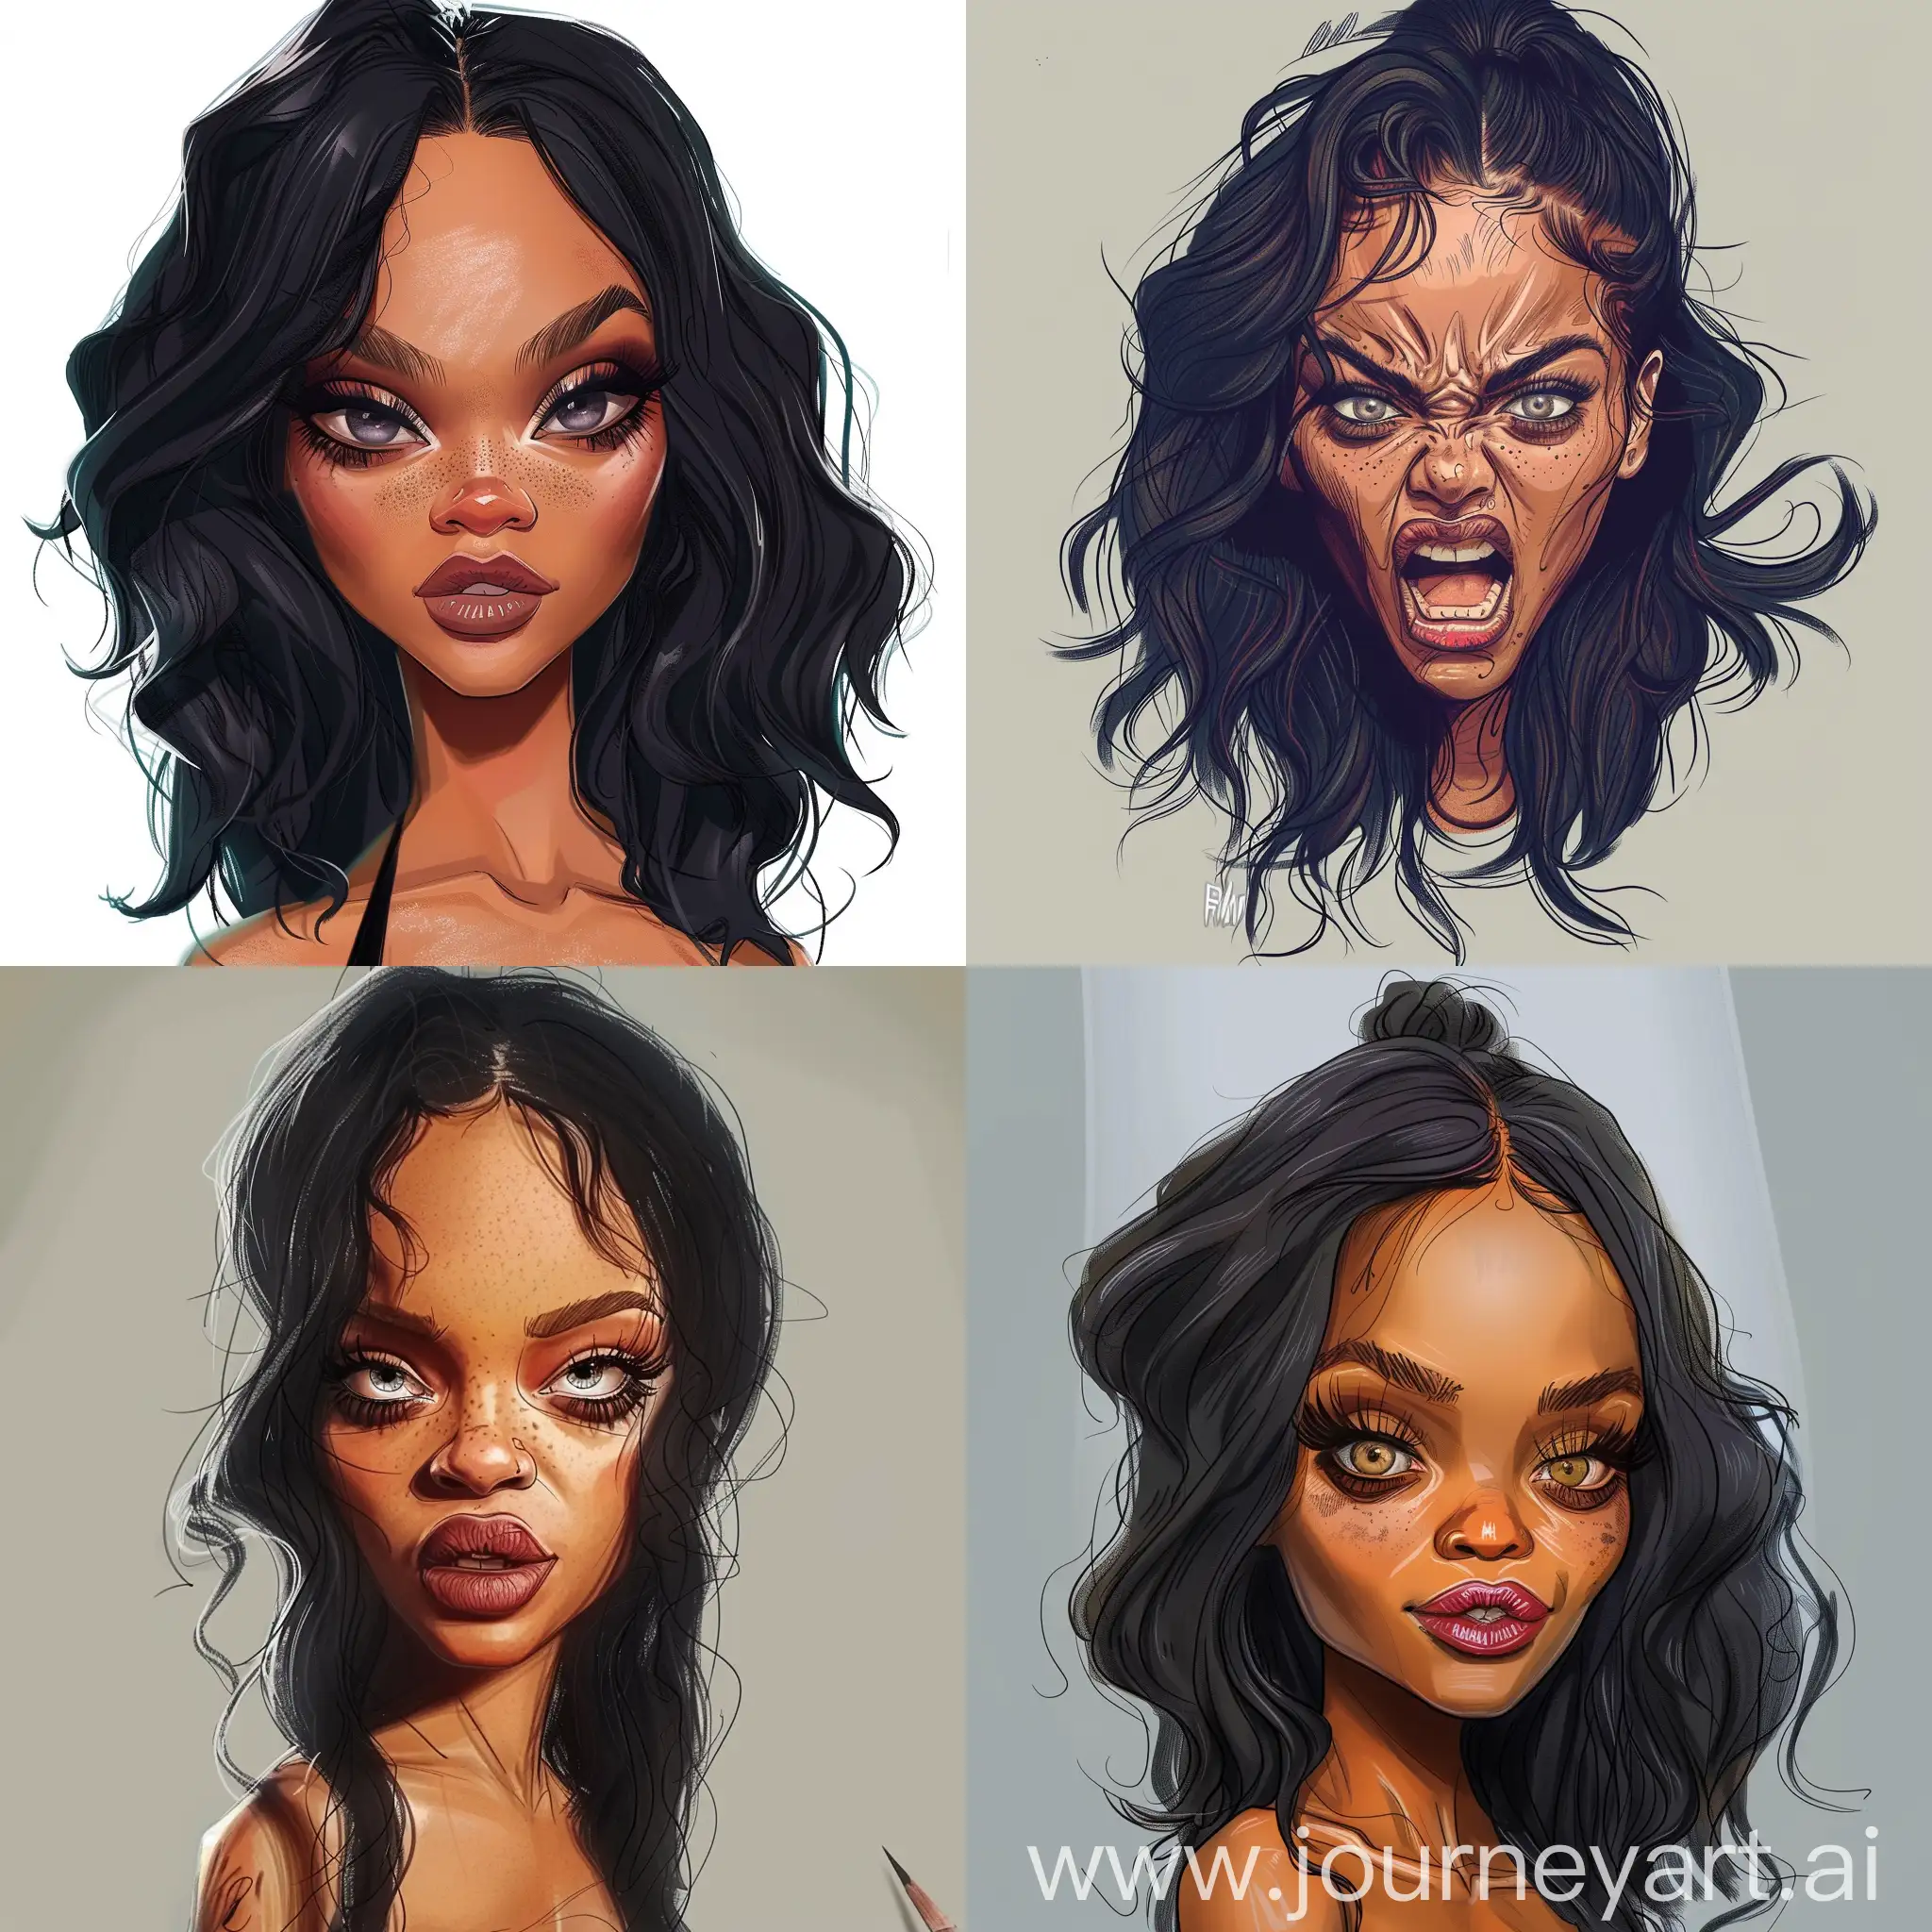 Desenhe Rihanna em uma caricatura que destaque seu rosto de forma exagerada, com seus cabelos volumosos e ondulados, olhos expressivos e marcantes, uma boca cheia e sensual, um nariz delicado e bem definido. Certifique-se de capturar sua personalidade vibrante e confiante."